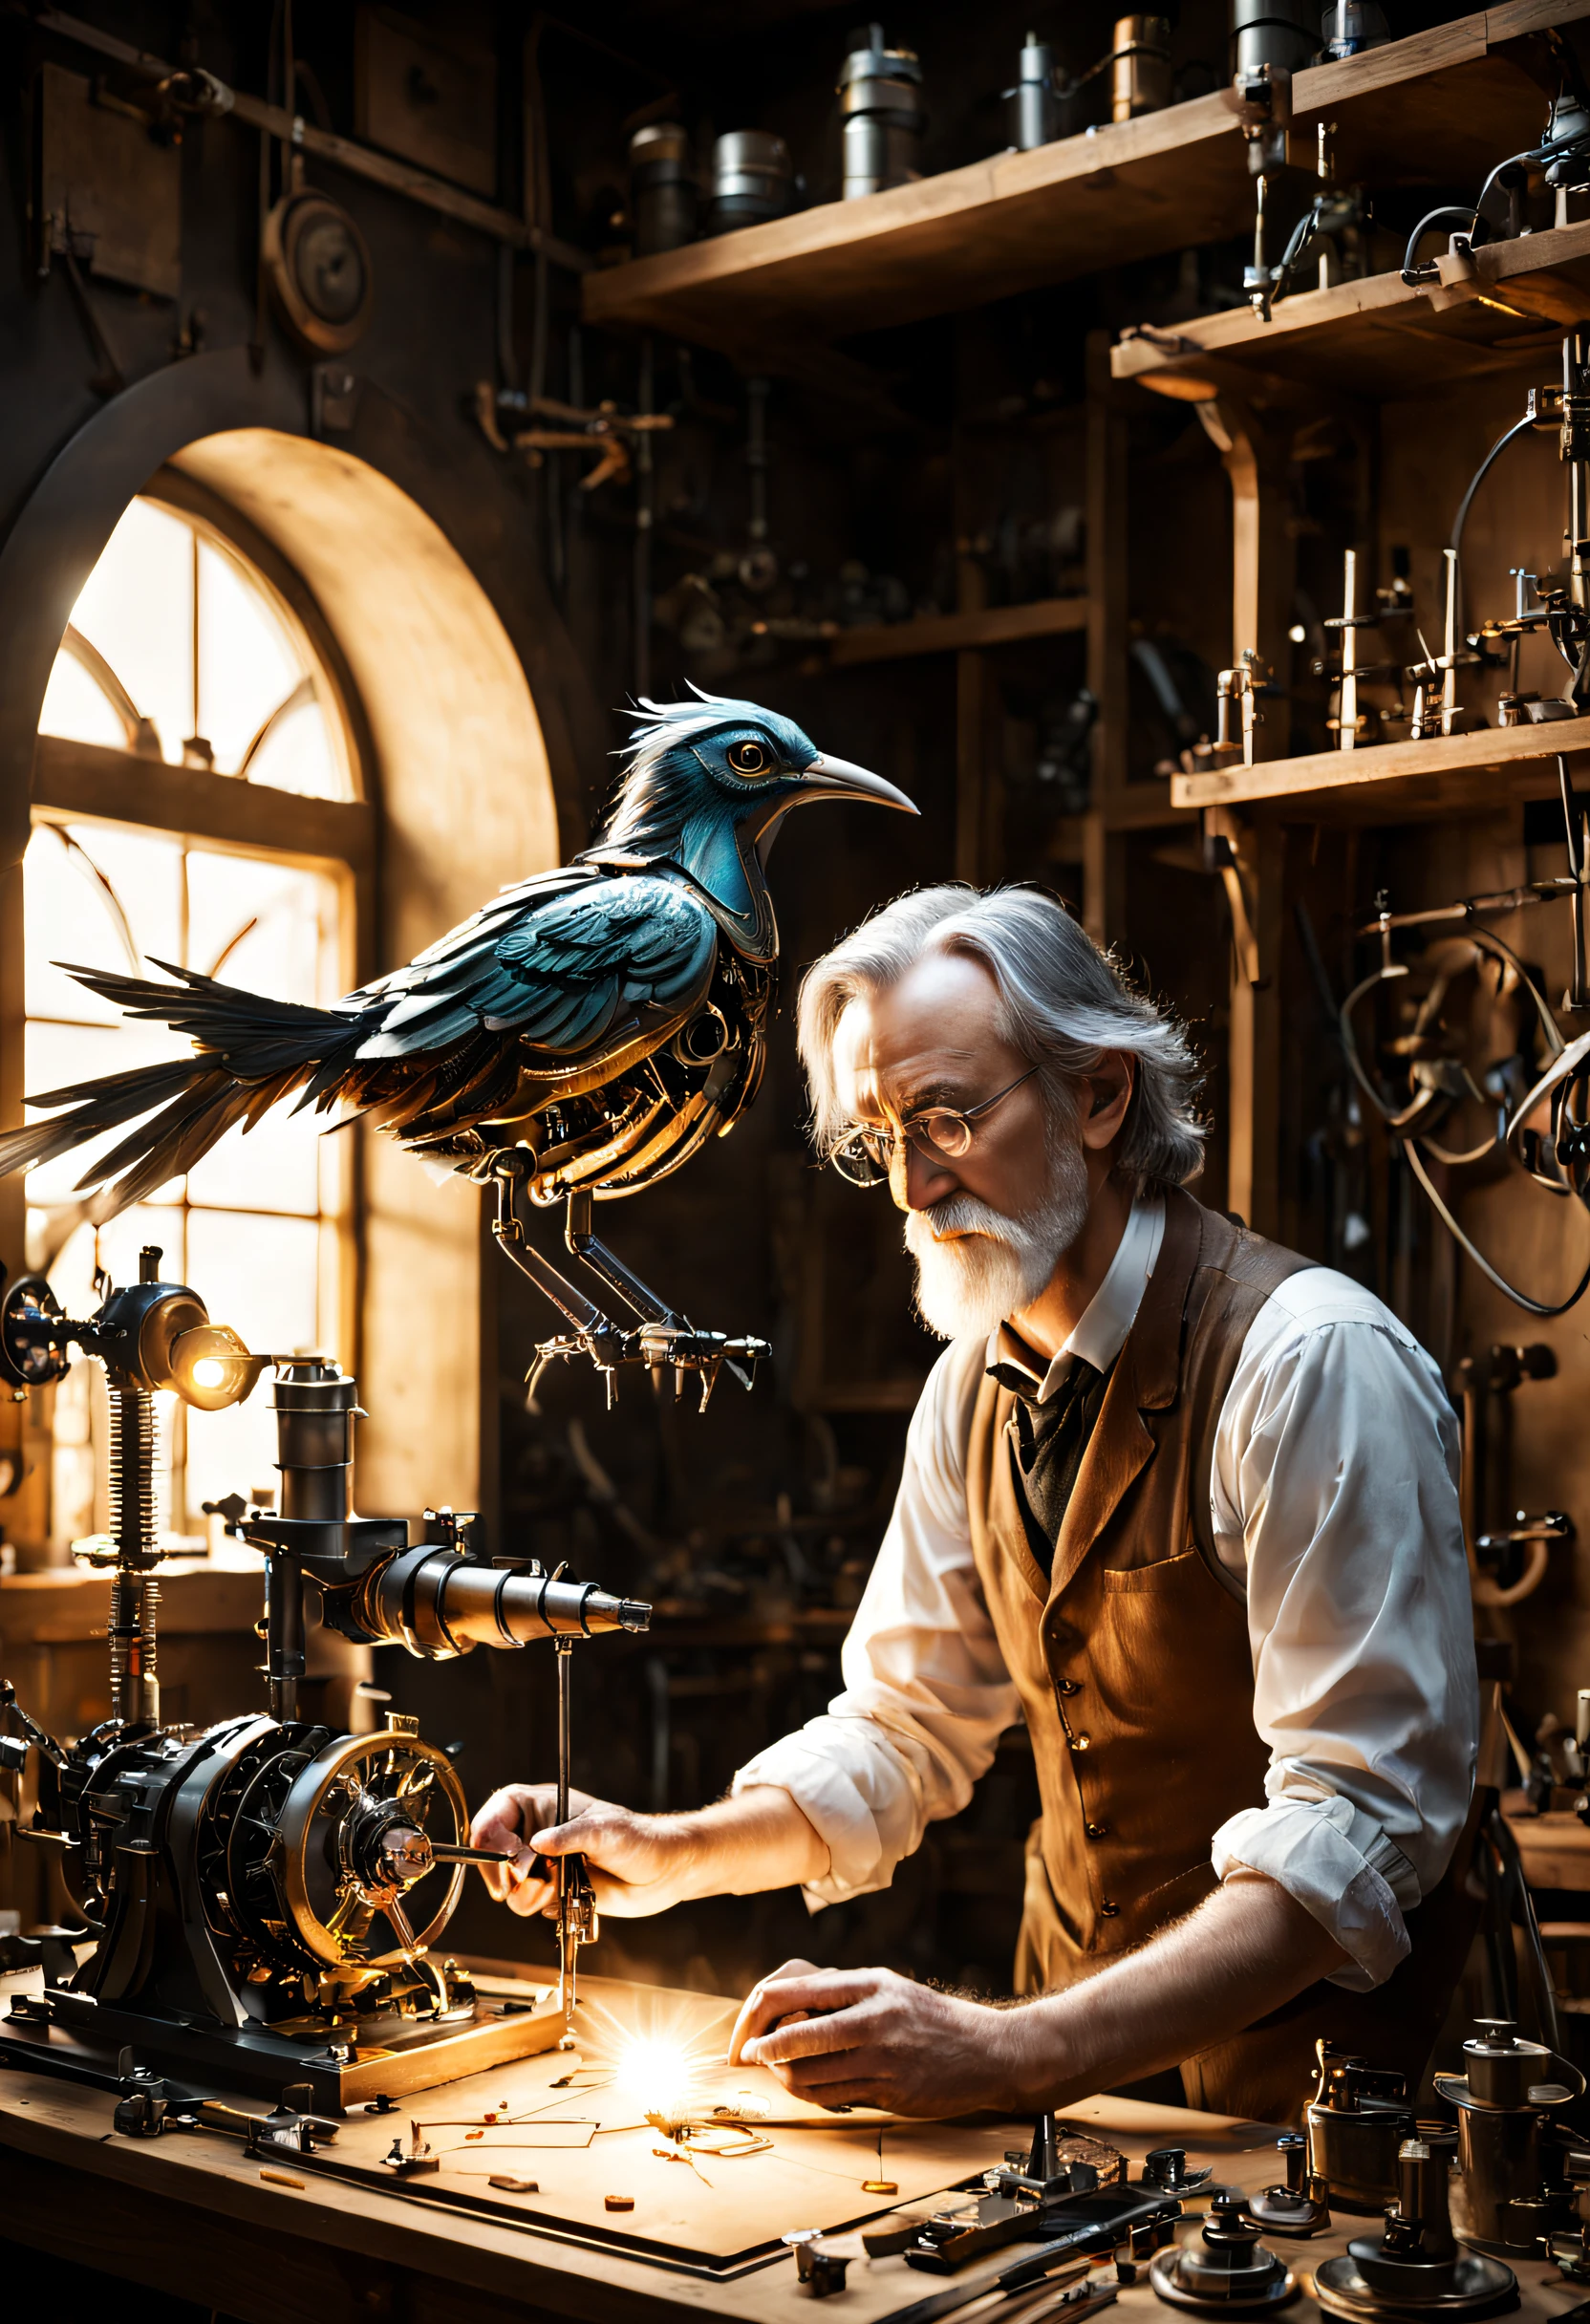 一位科学家在车间制造机械鸟. 他正在把最后的部分放进去. 托尔金风格的魔幻氛围.